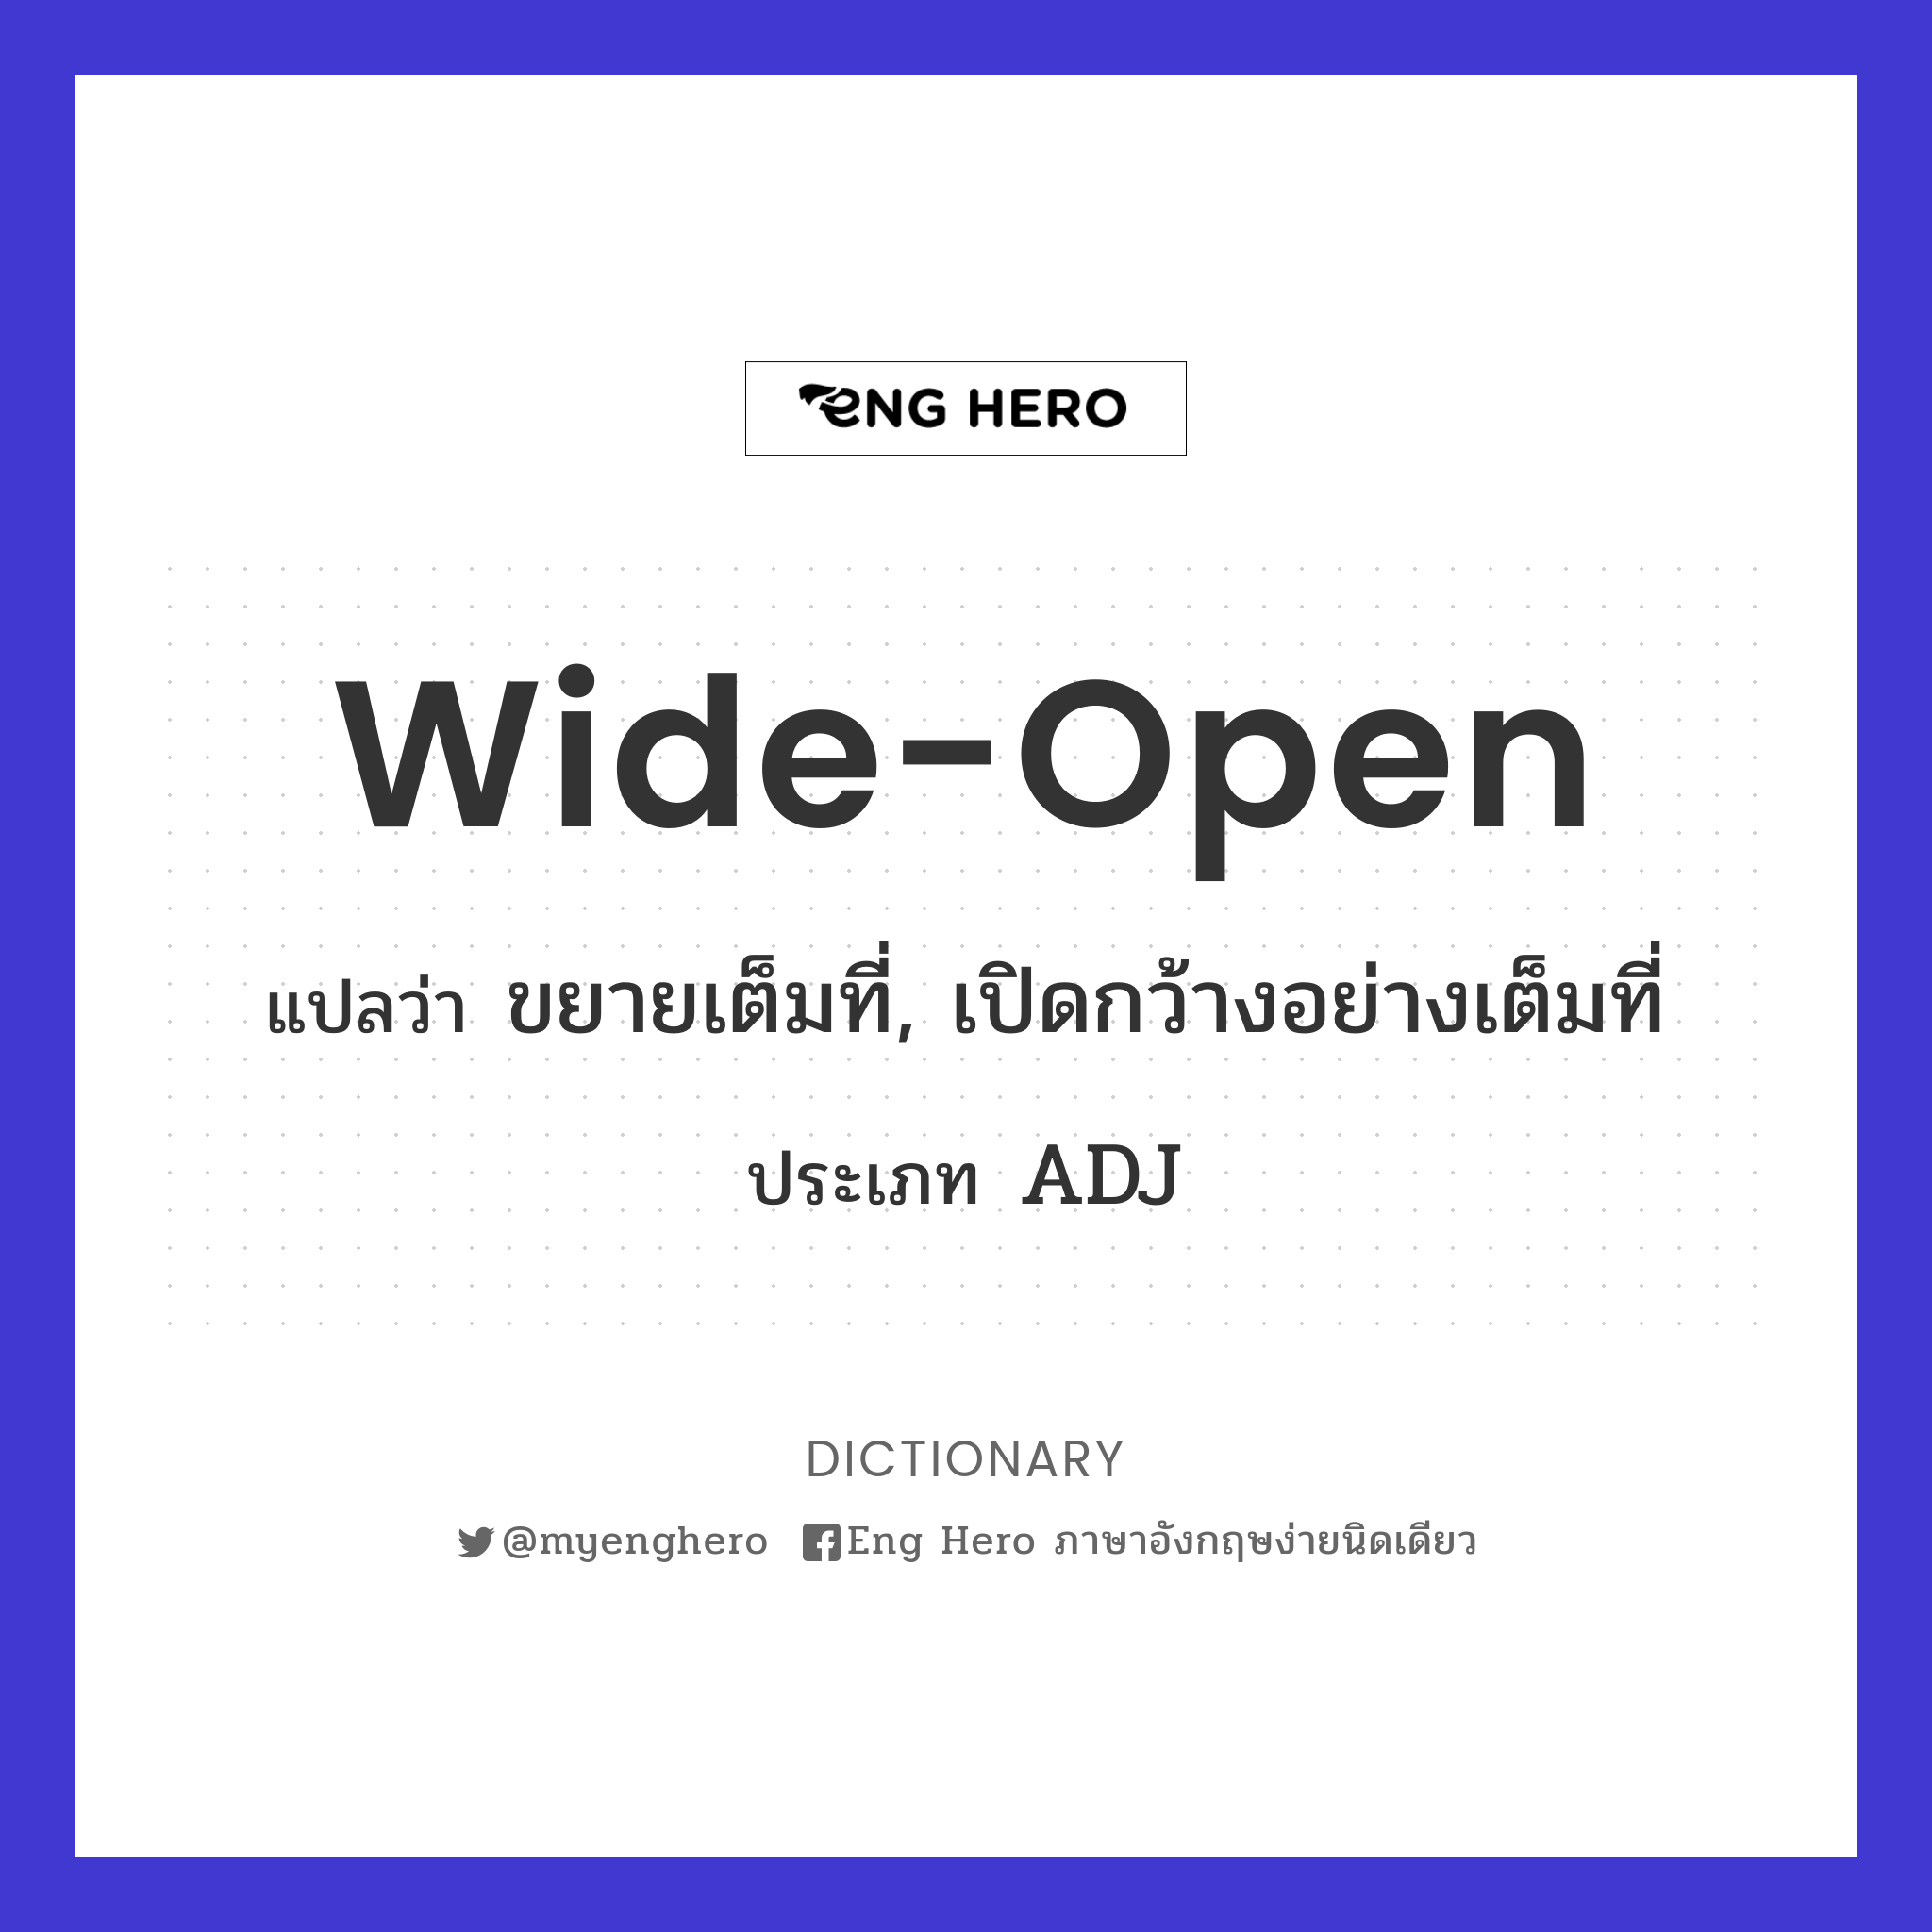 wide-open